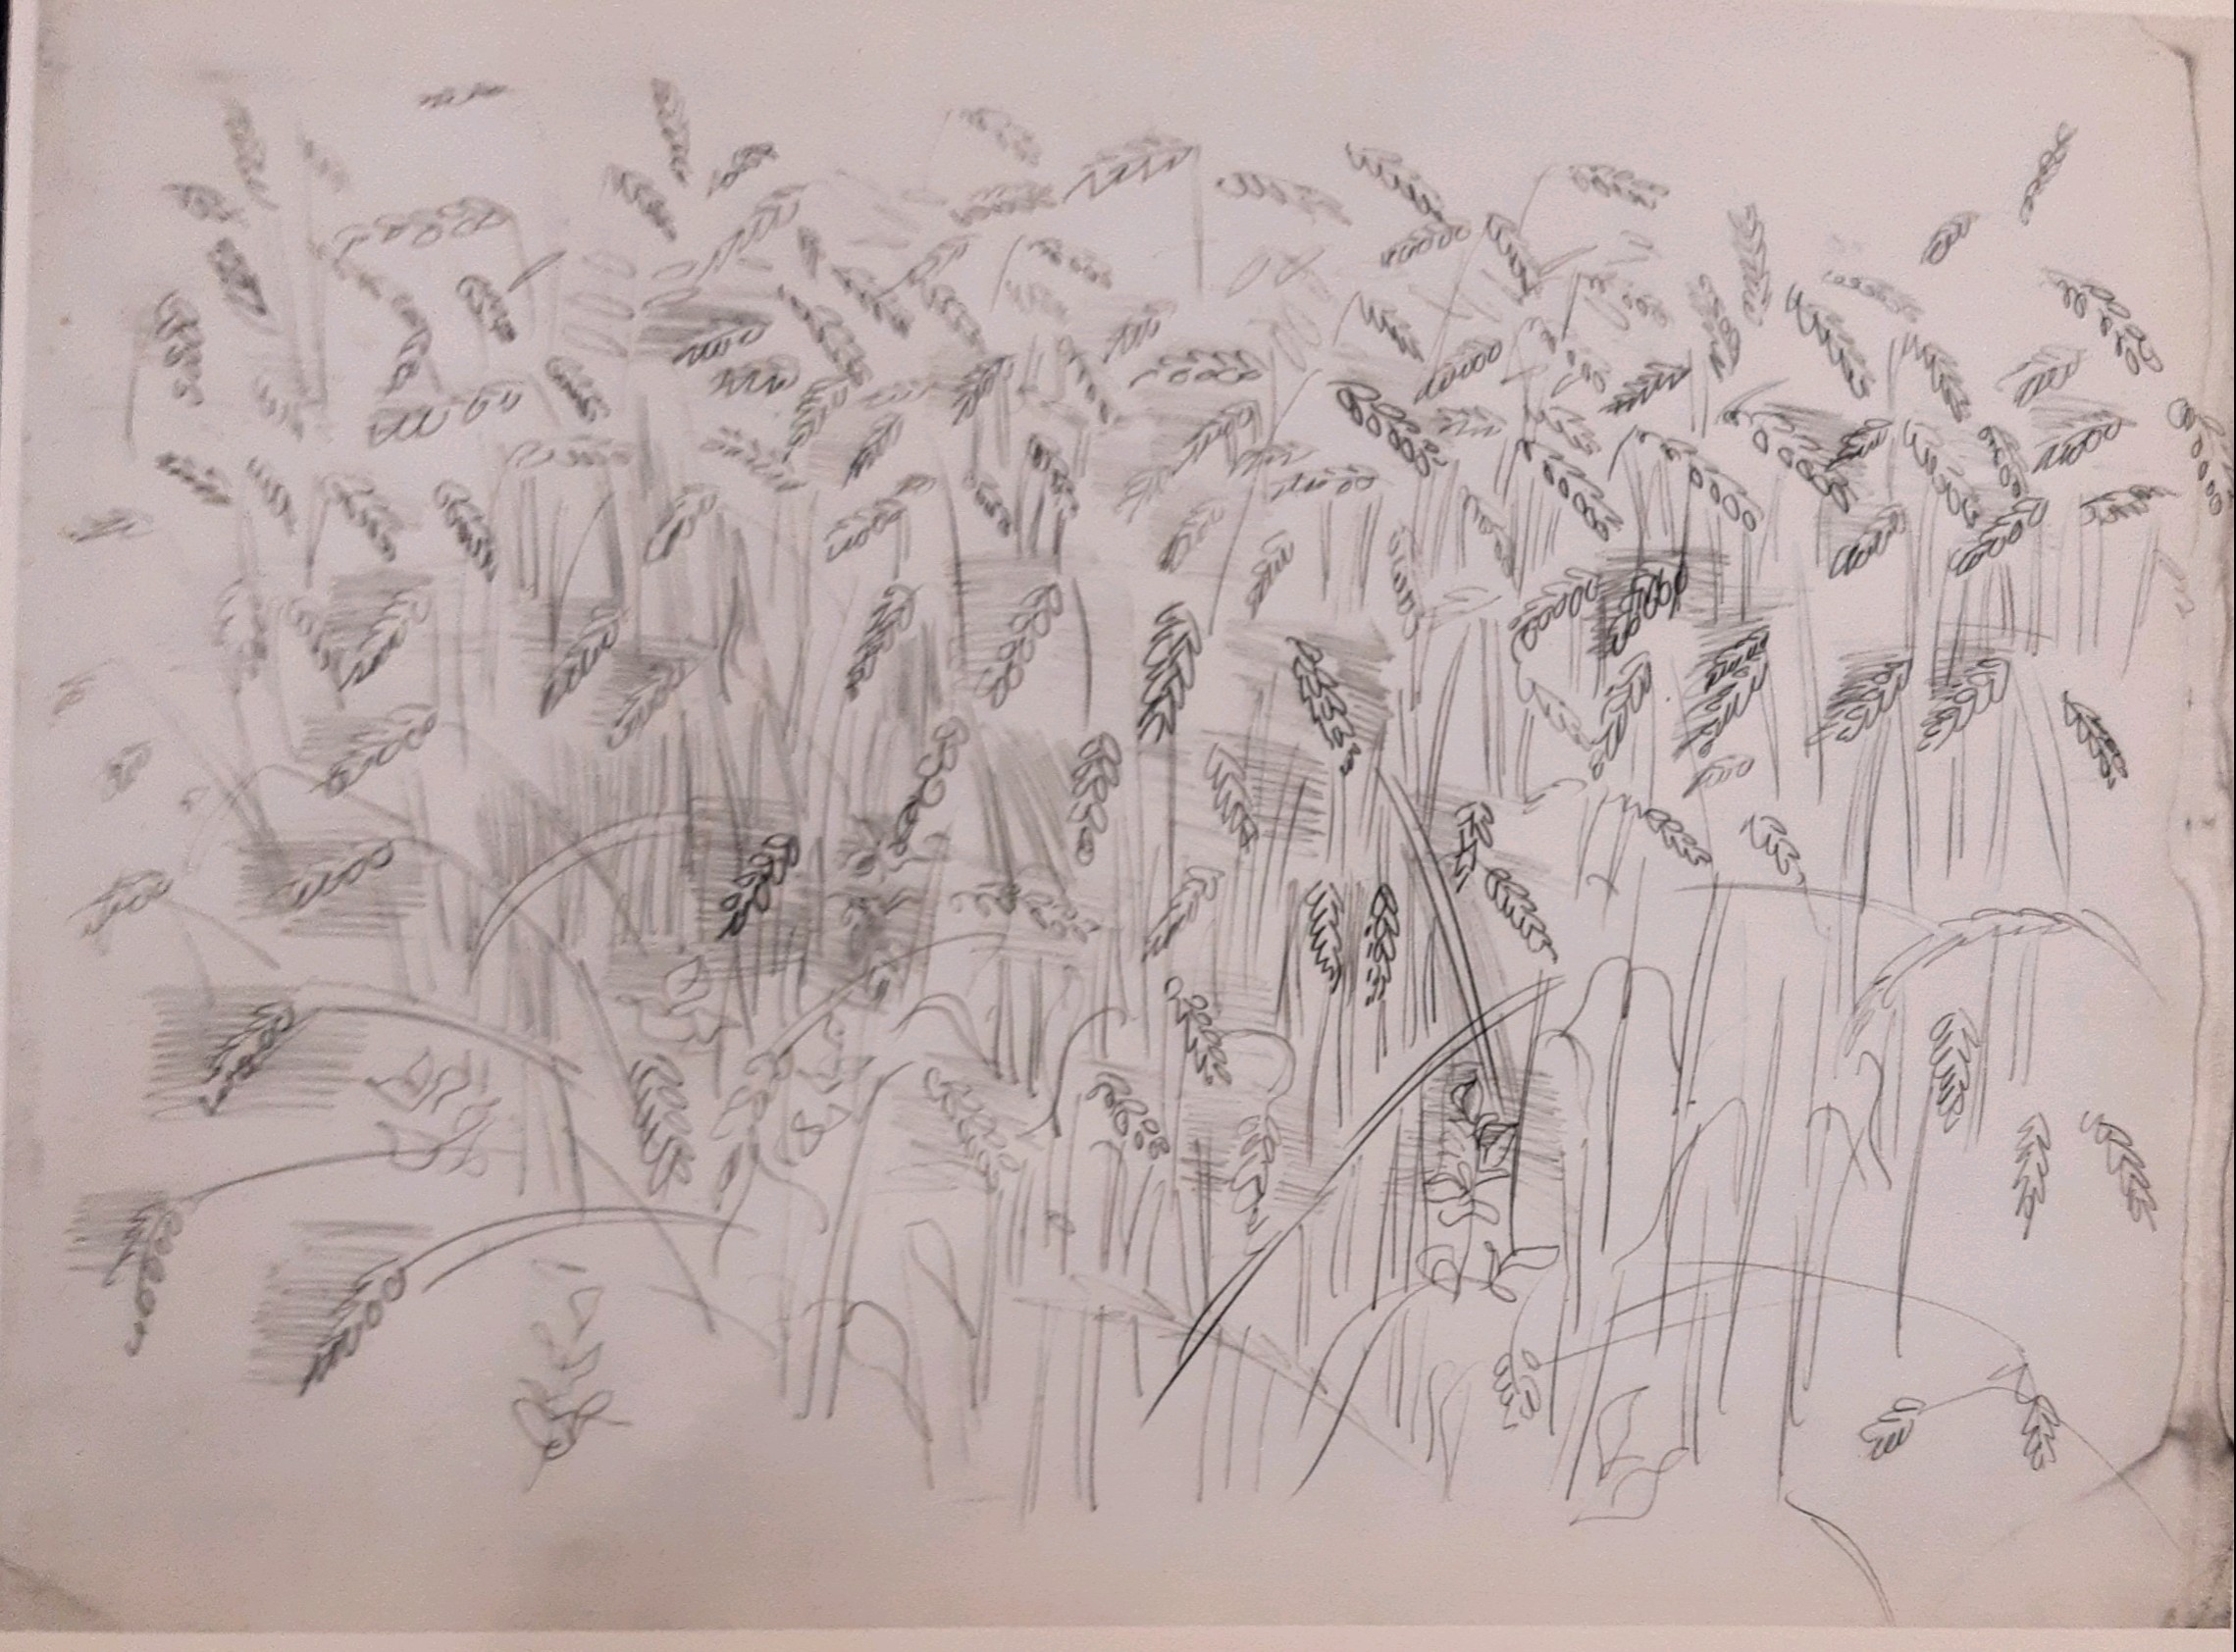 Raoul Dufy, Les blés